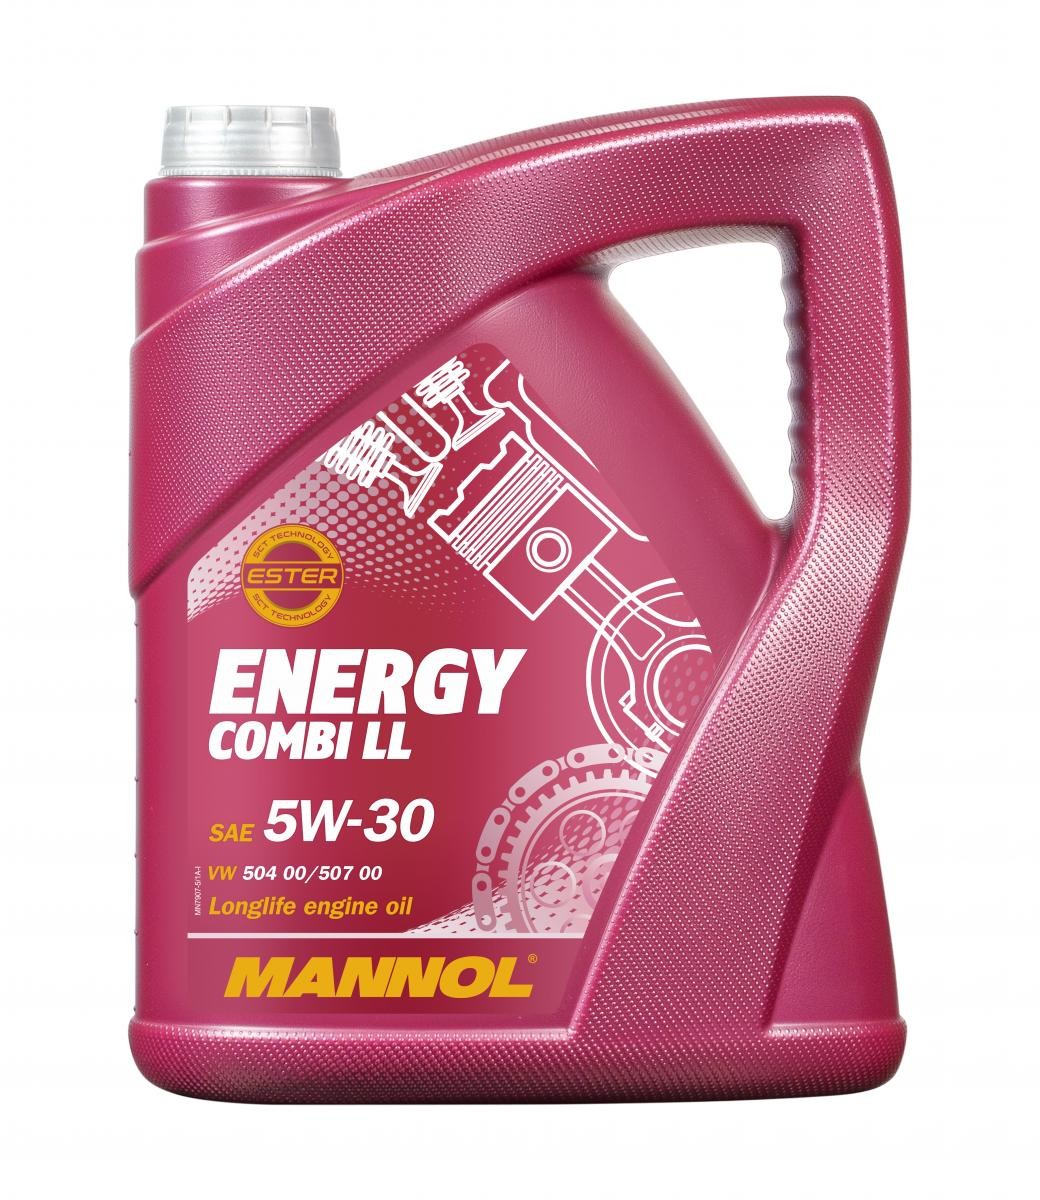 MANNOL ENERGY COMBI LL 5W 30 ACEA C3 5l